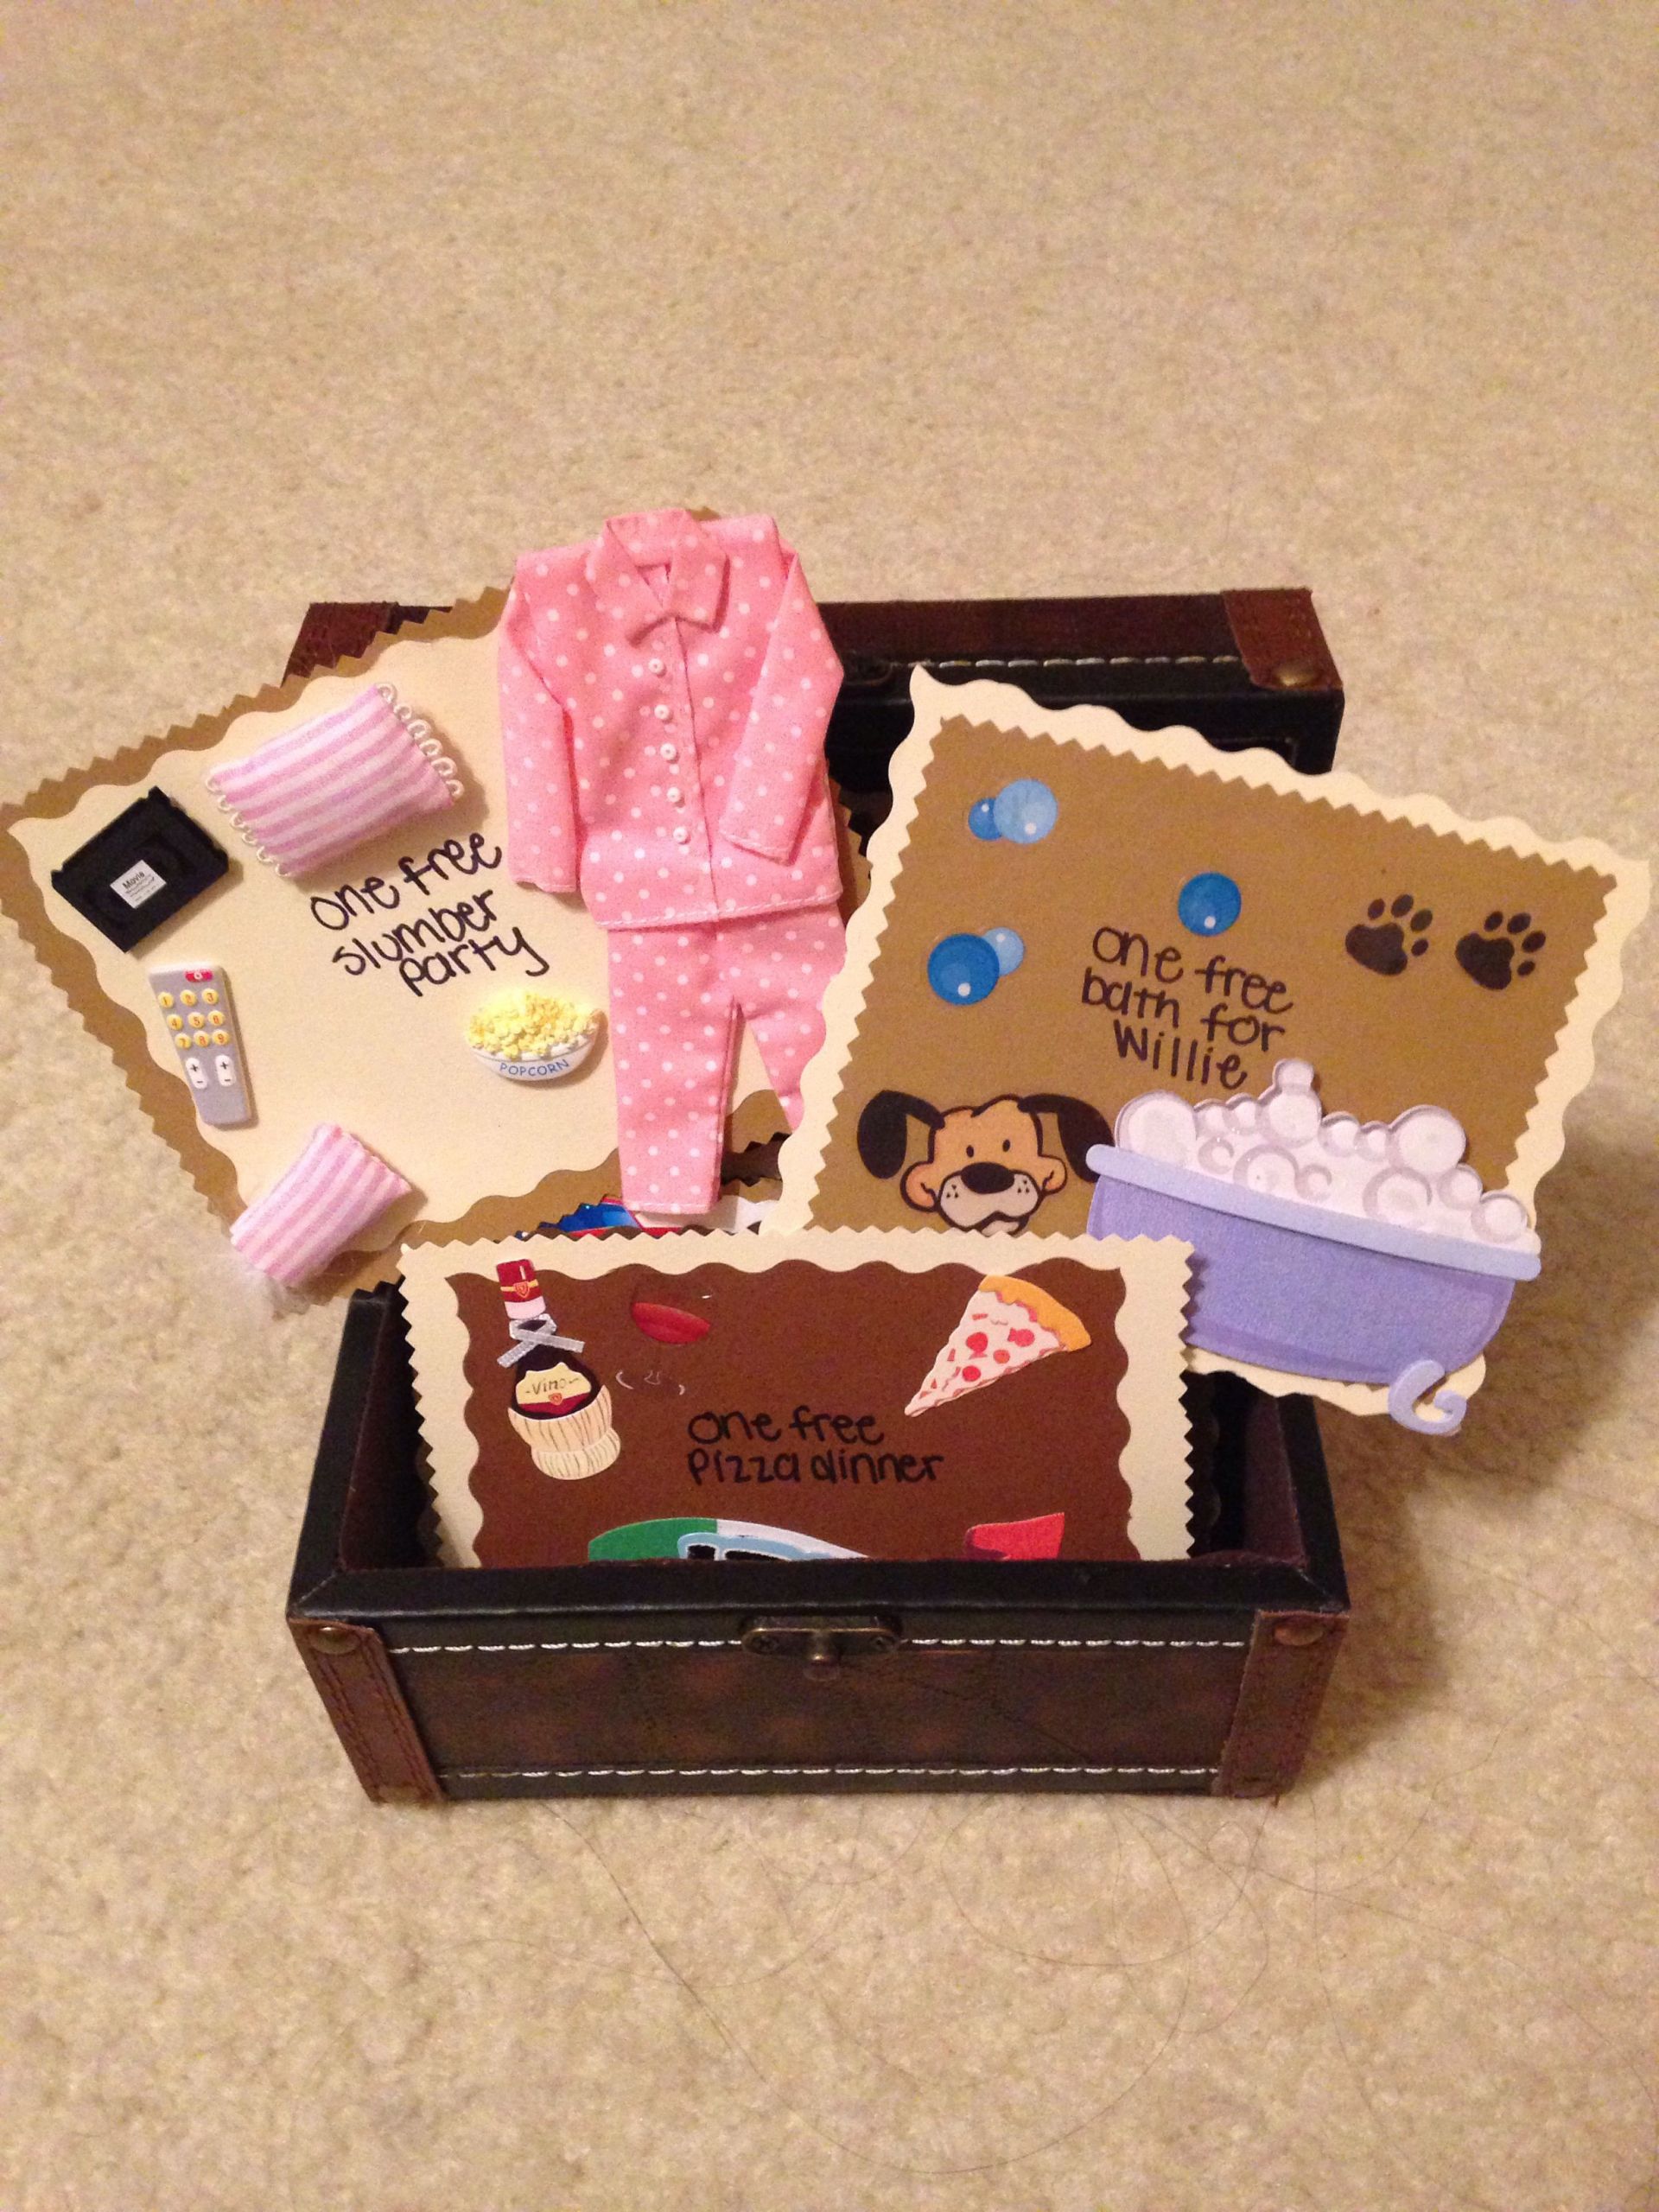 Handmade Gift Ideas For Boyfriend
 Pin by bryanna galvan on Crafts